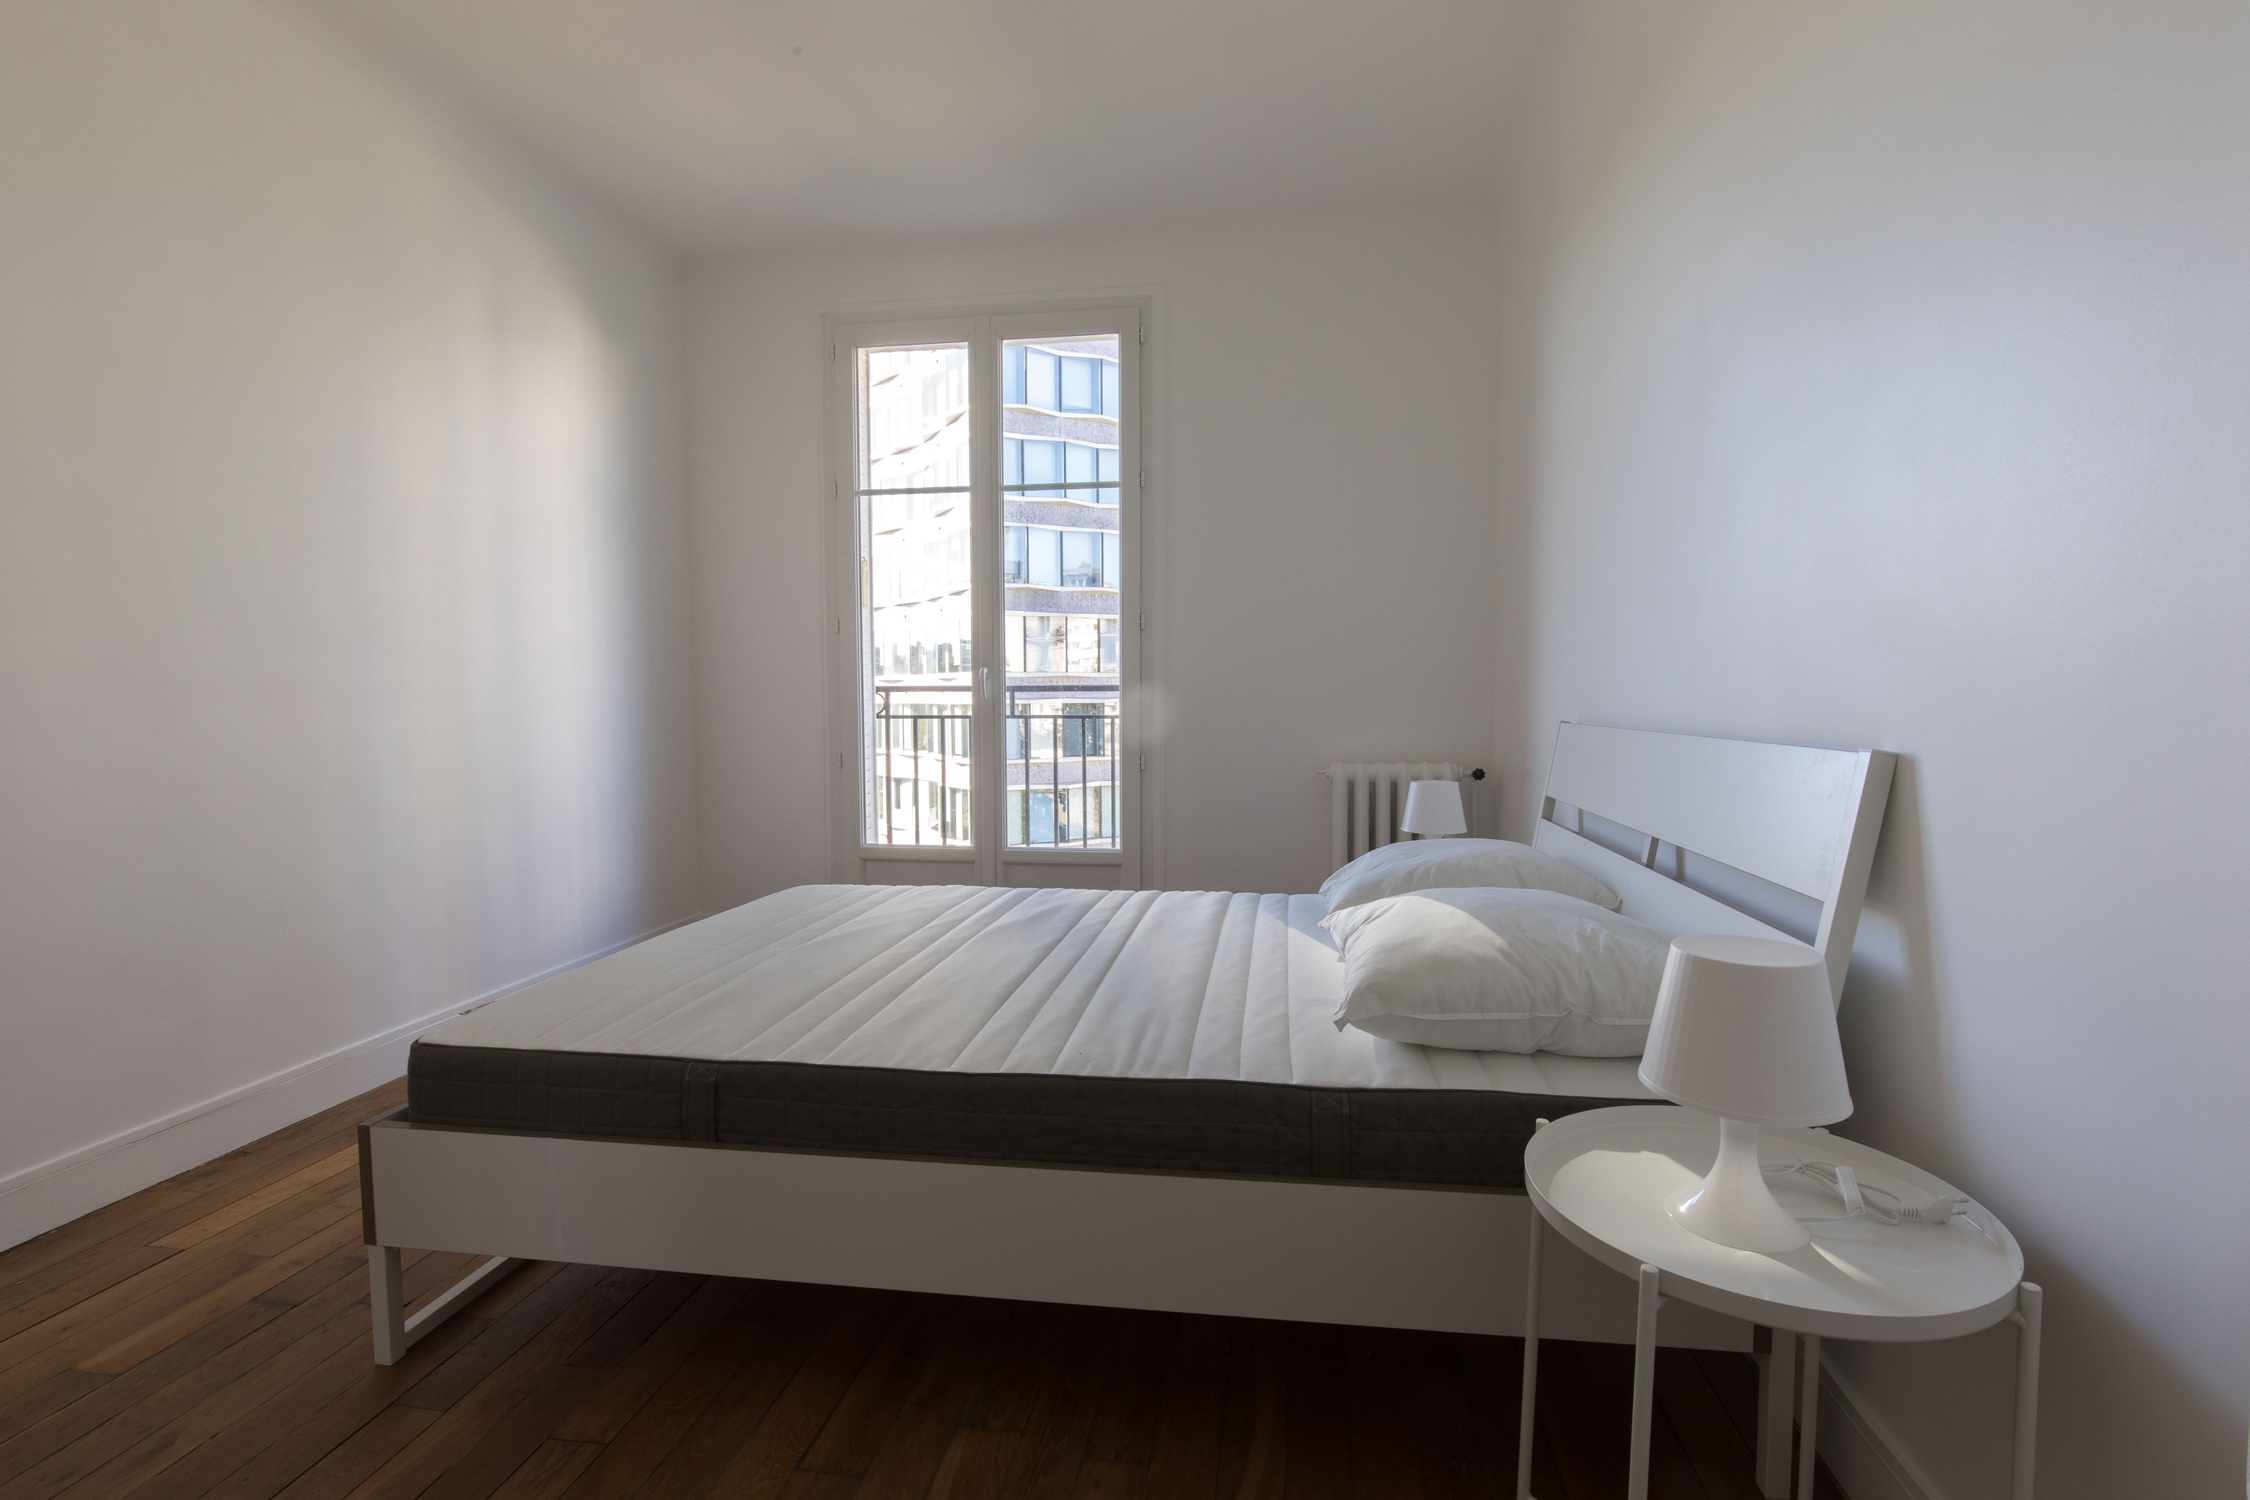 location duplex loft appartement Javel Paris 15ème 75015 Pont Mirabeau